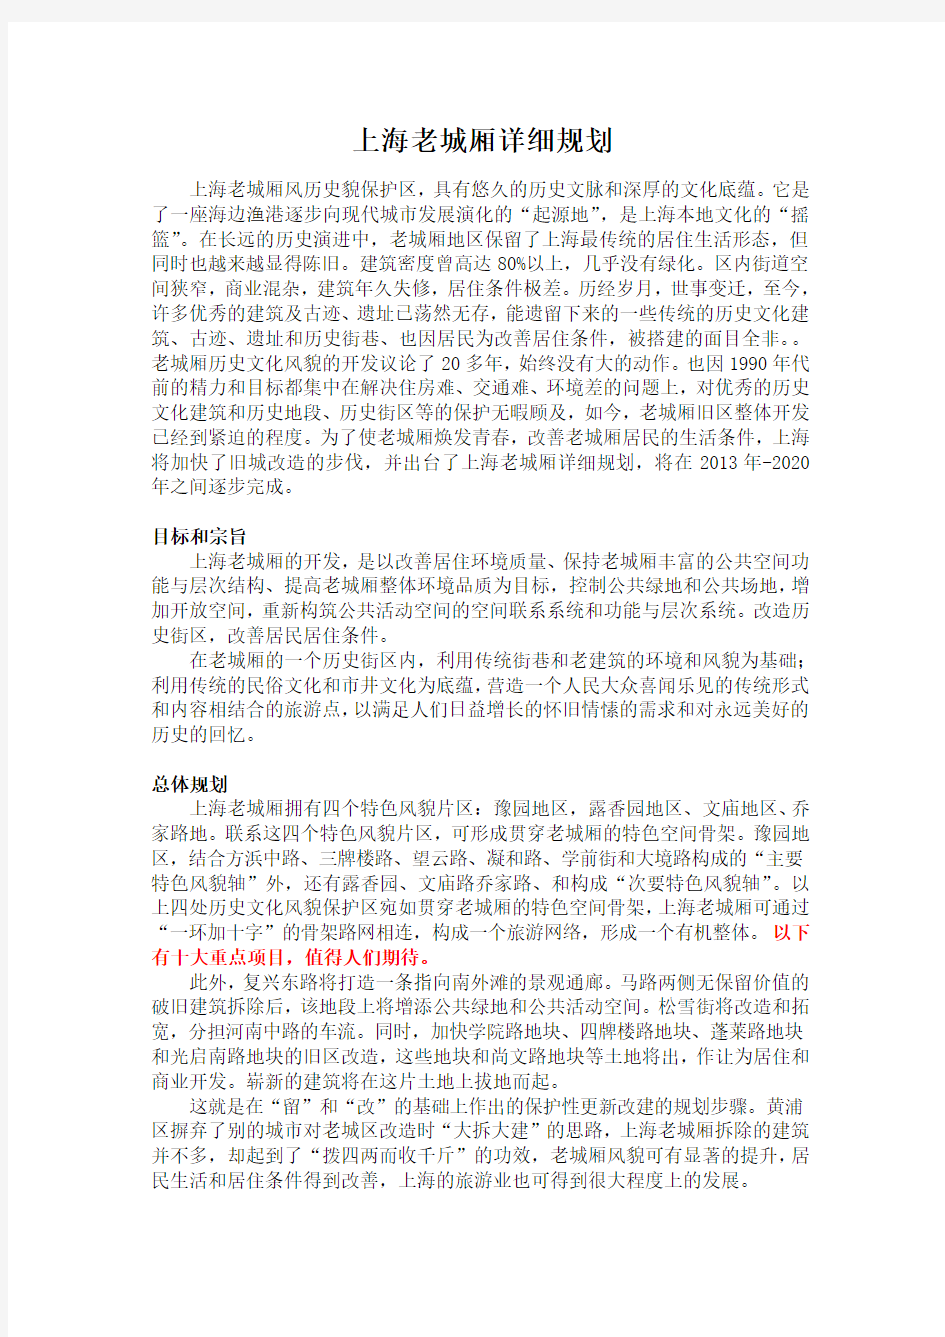 上海老城厢详细规划介绍